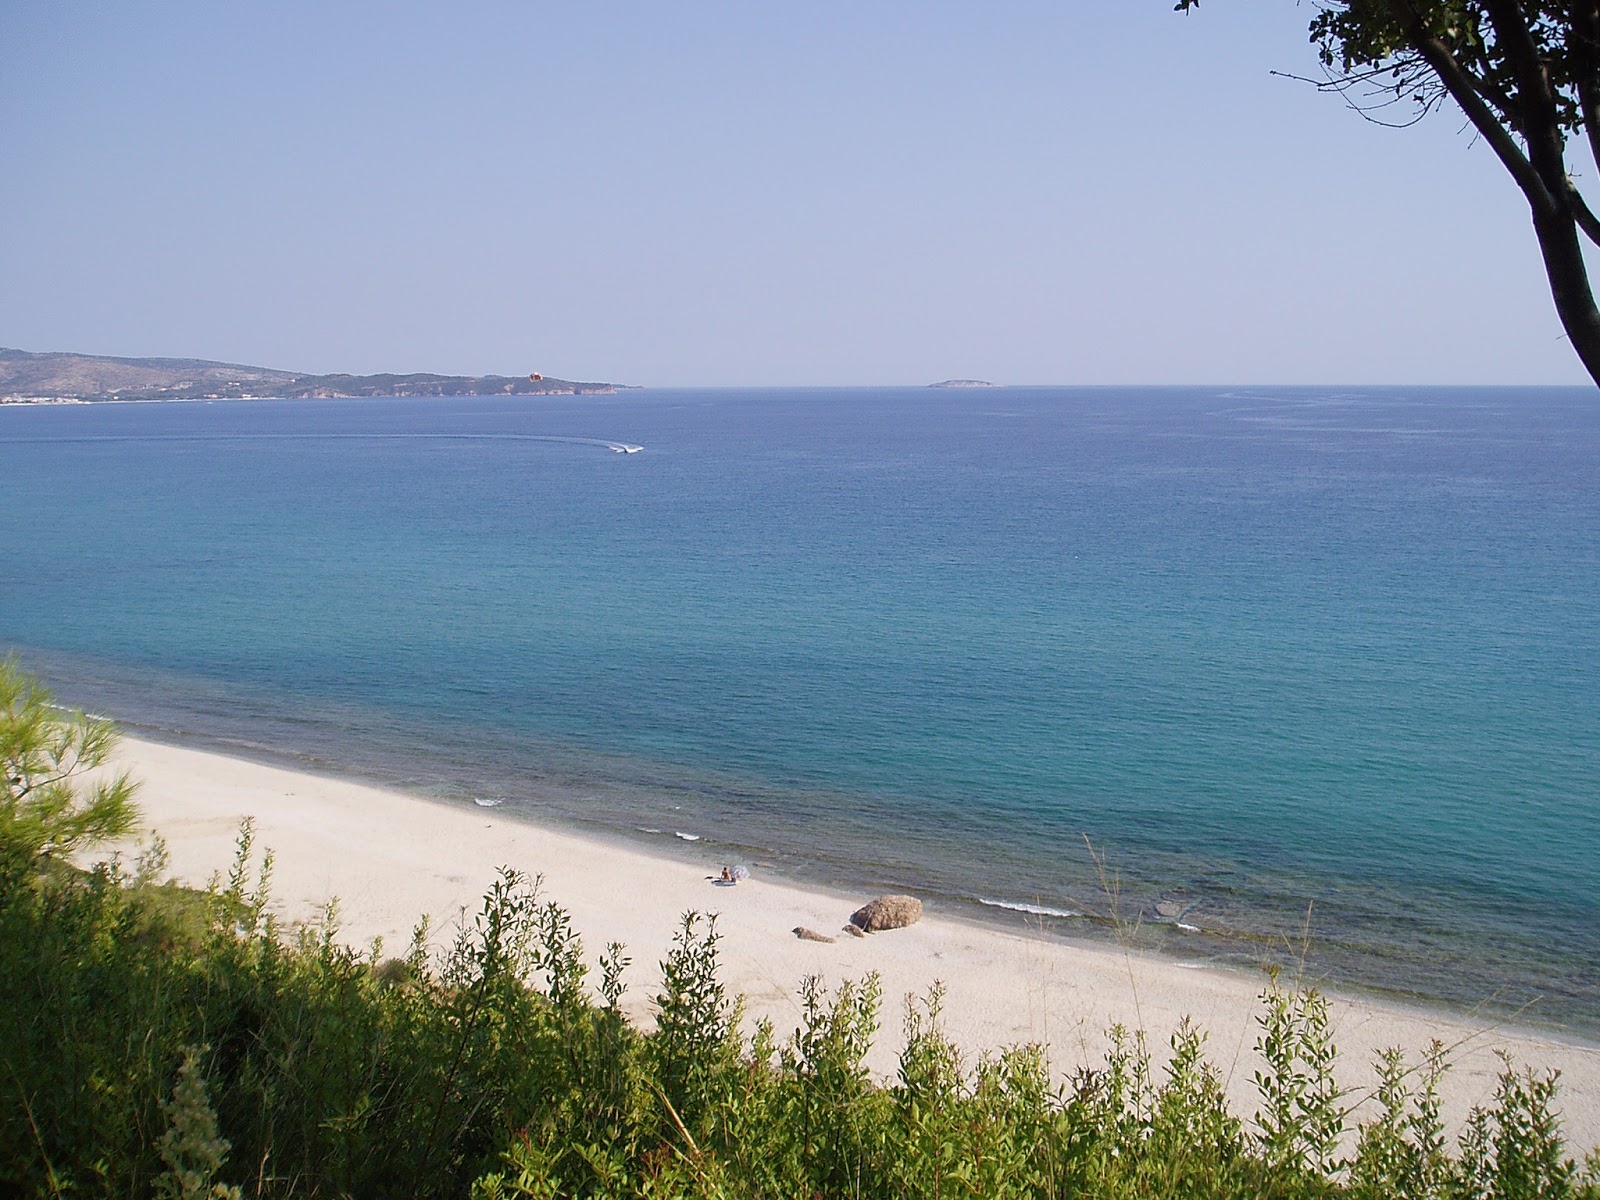 Trypiti beach II'in fotoğrafı hafif ince çakıl taş yüzey ile